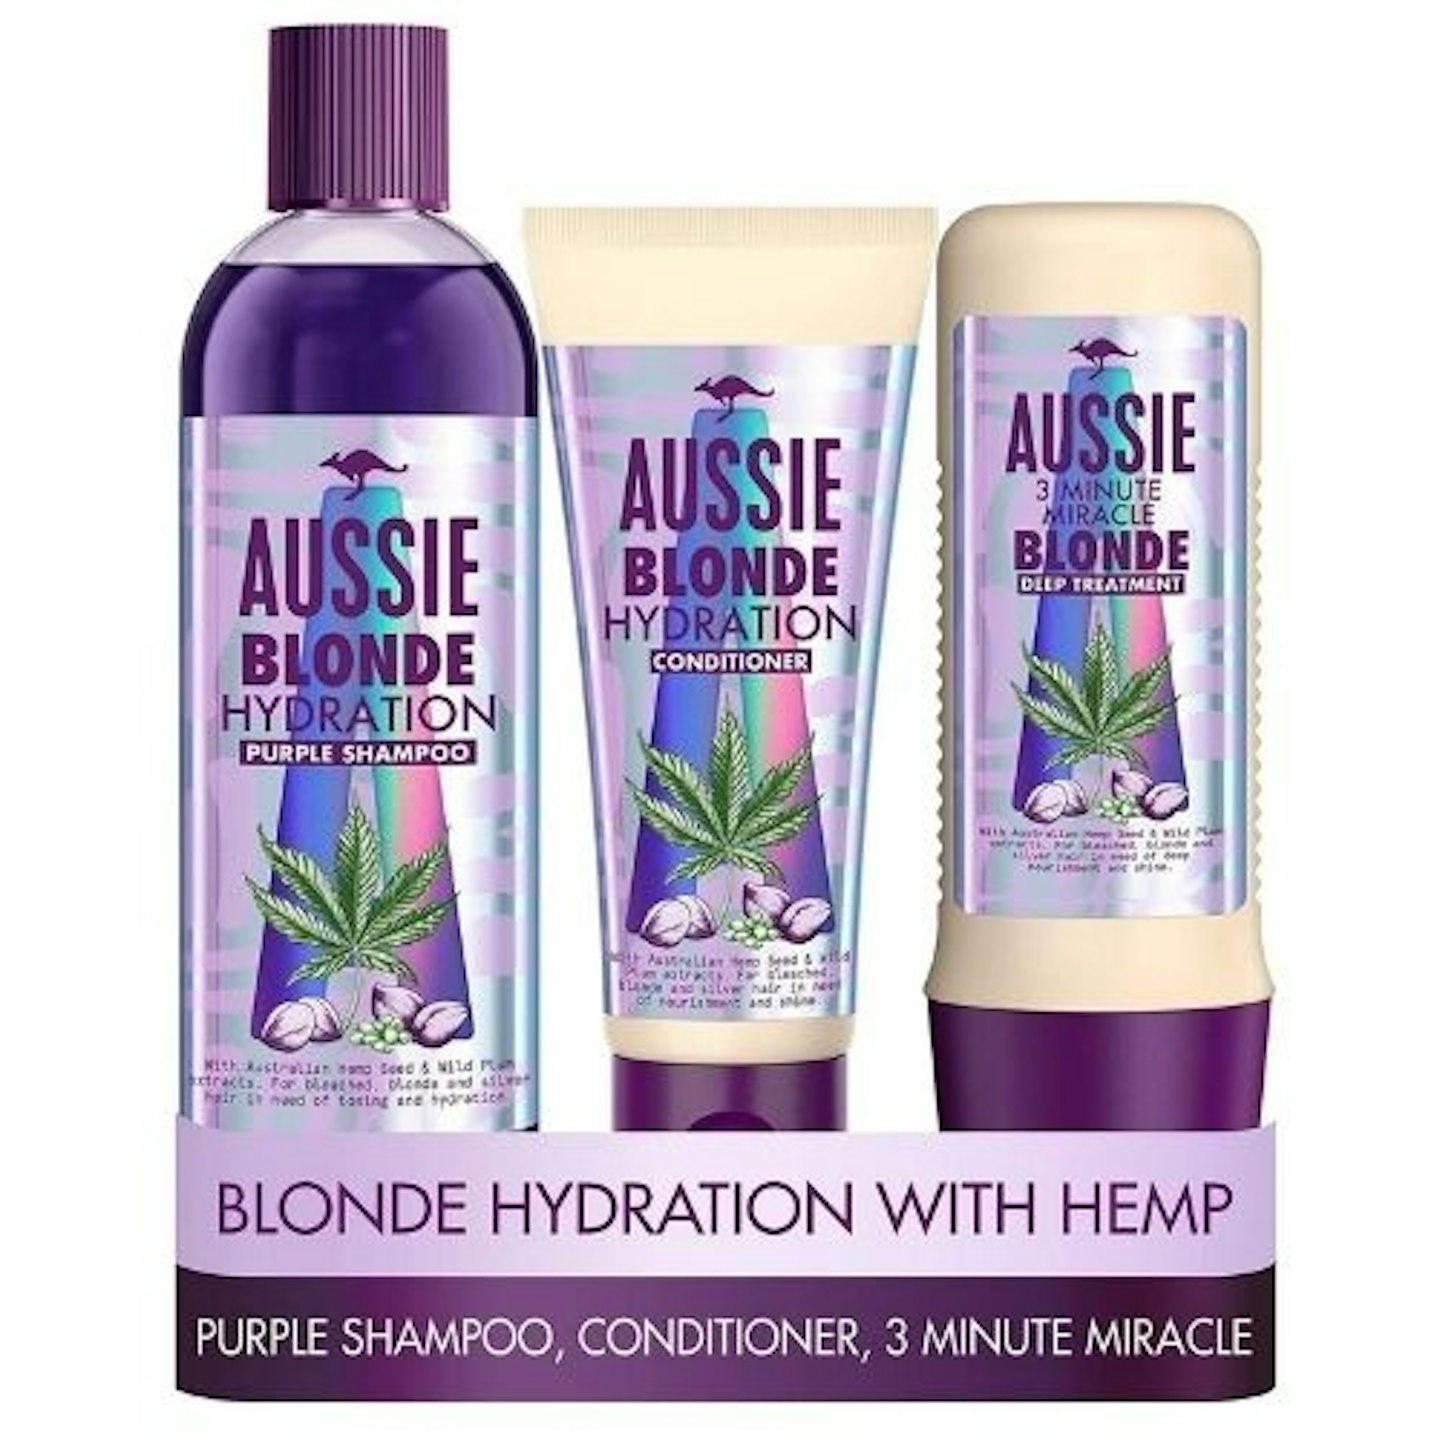 Aussie Blonde Hydration Vegan Purple Shampoo and Conditioner Set, £18.95